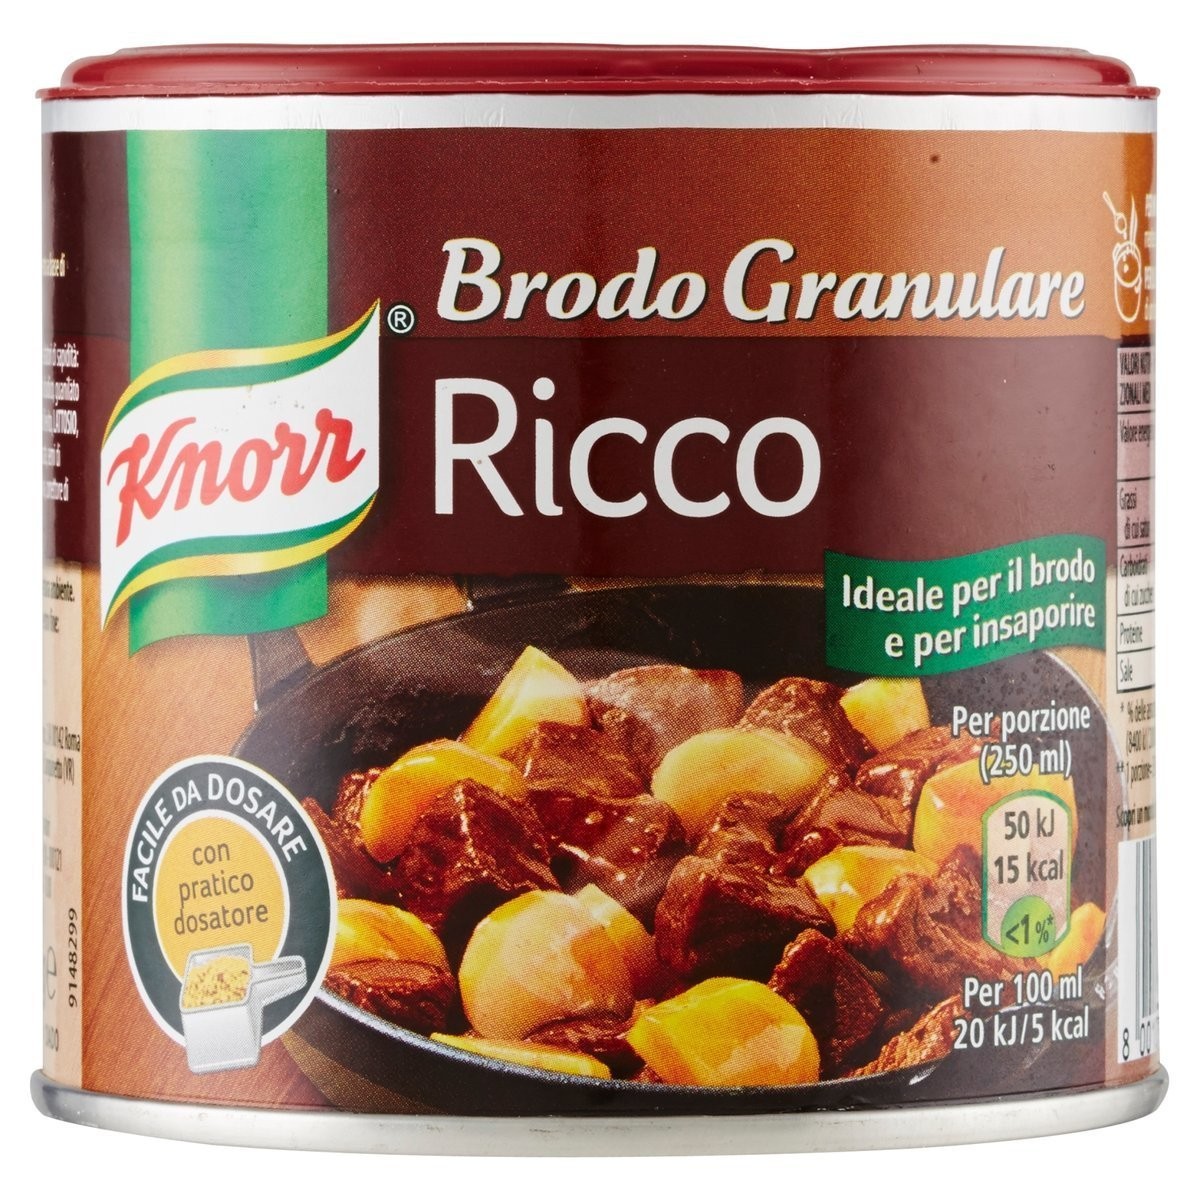 Knorr Brodo granulare